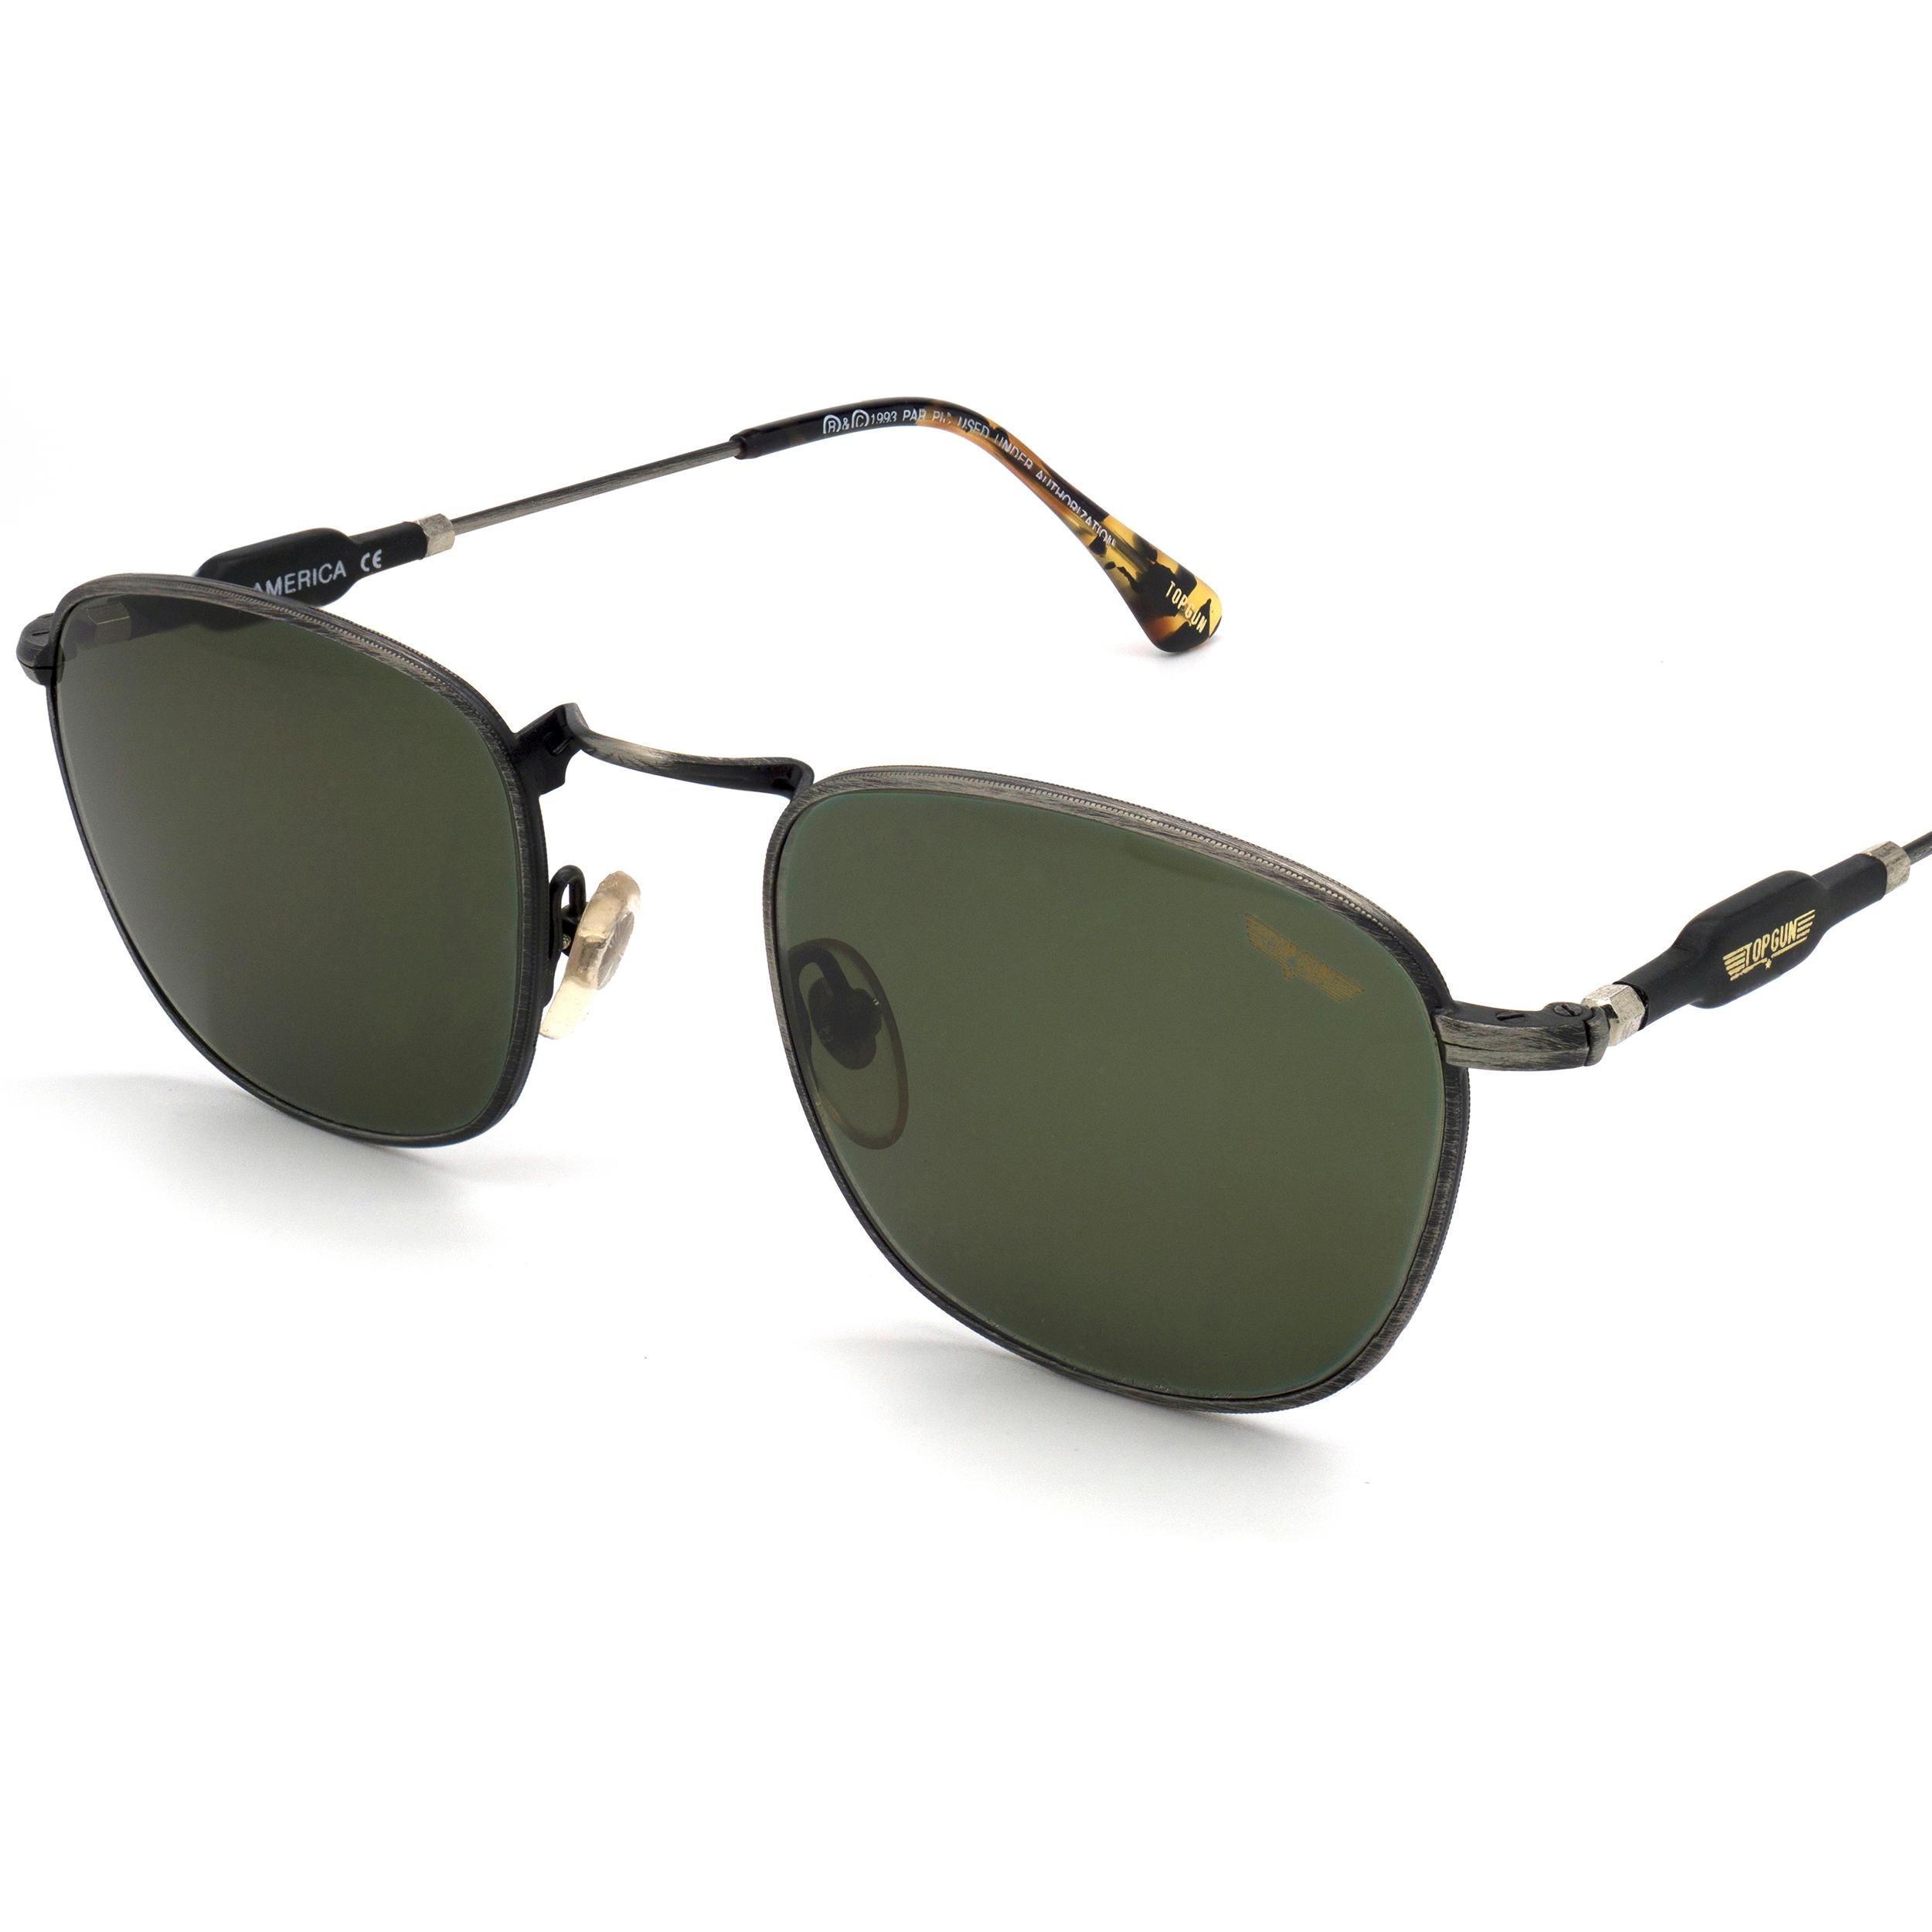 Top Gun square vintage sunglasses, Italy 90s In New Condition For Sale In Santa Clarita, CA